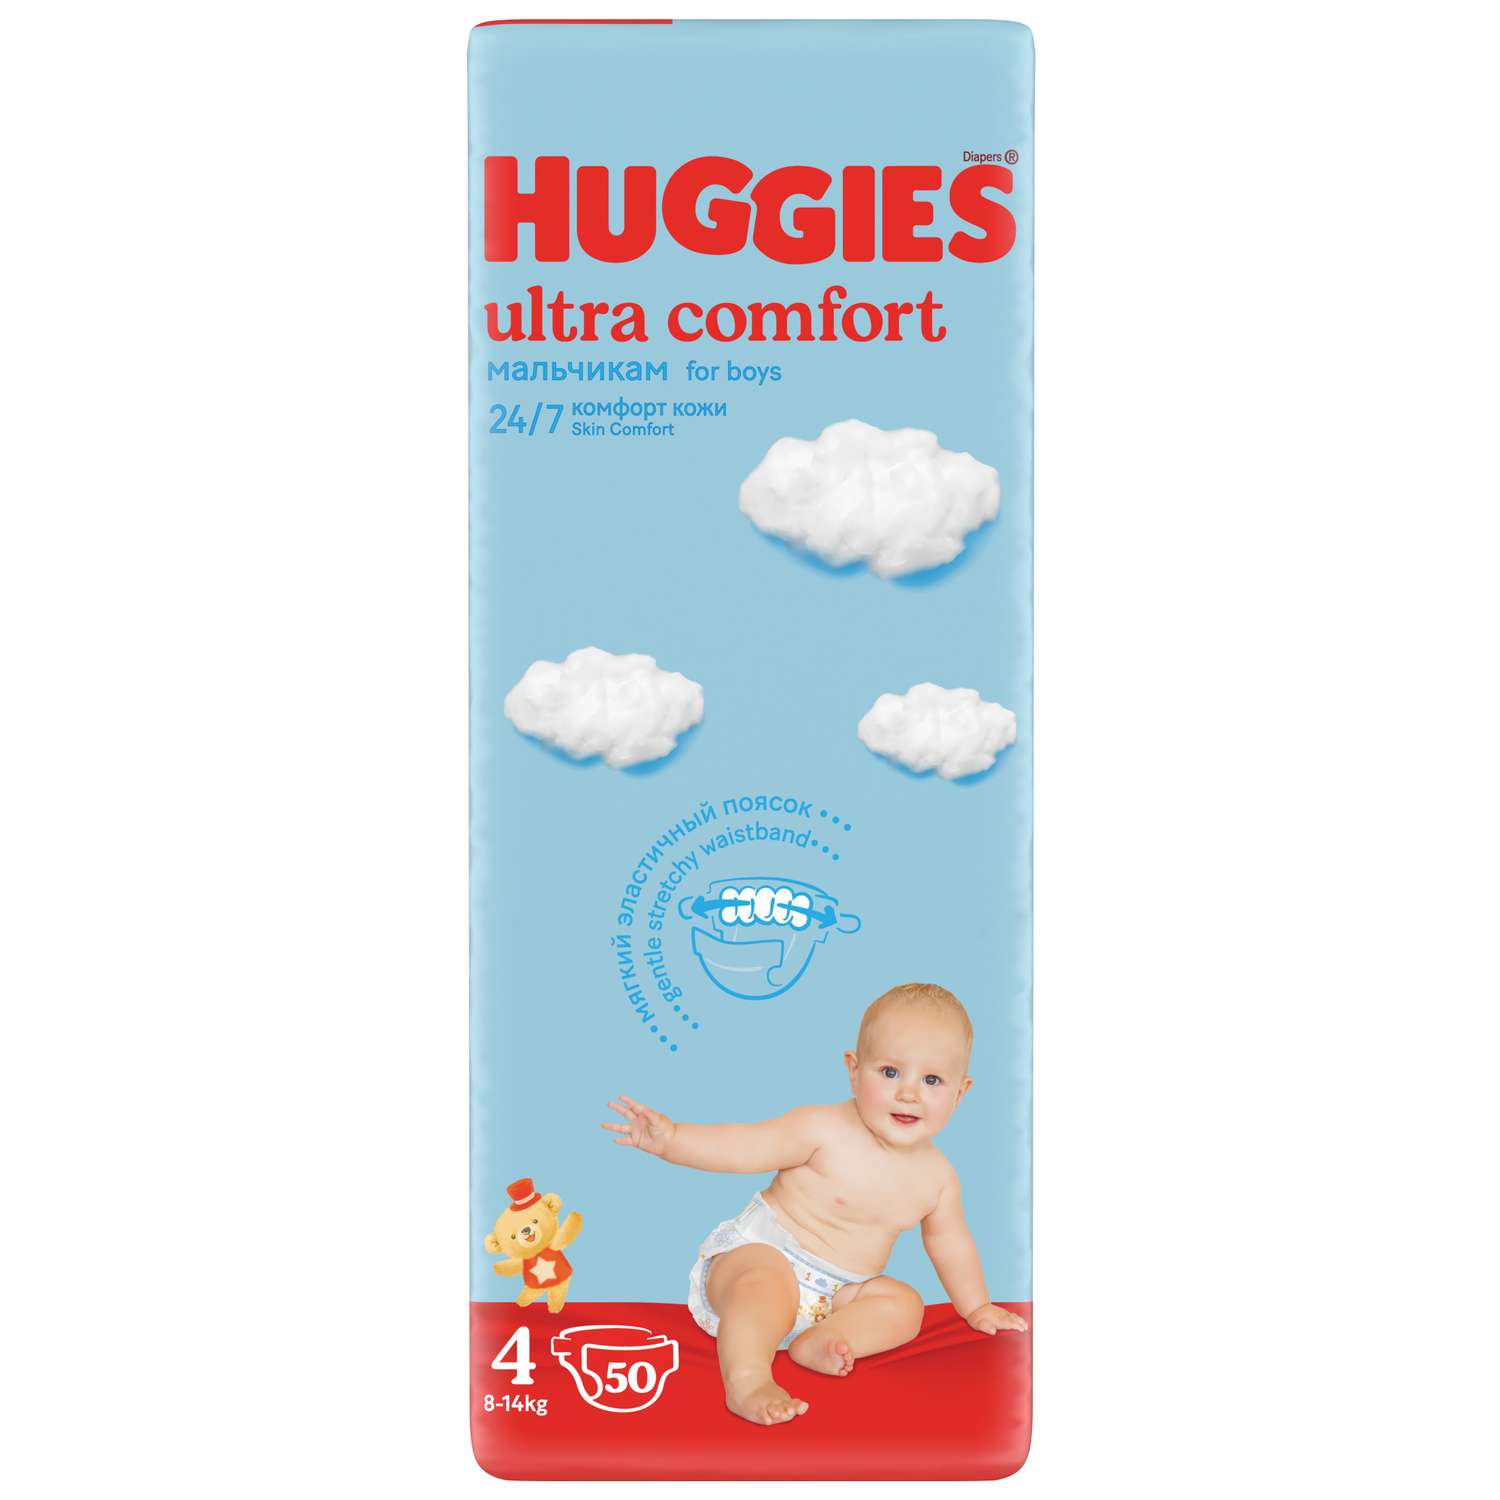 Подгузники Huggies Ultra Comfort для мальчиков 4 8-14кг 50 шт - фото 2